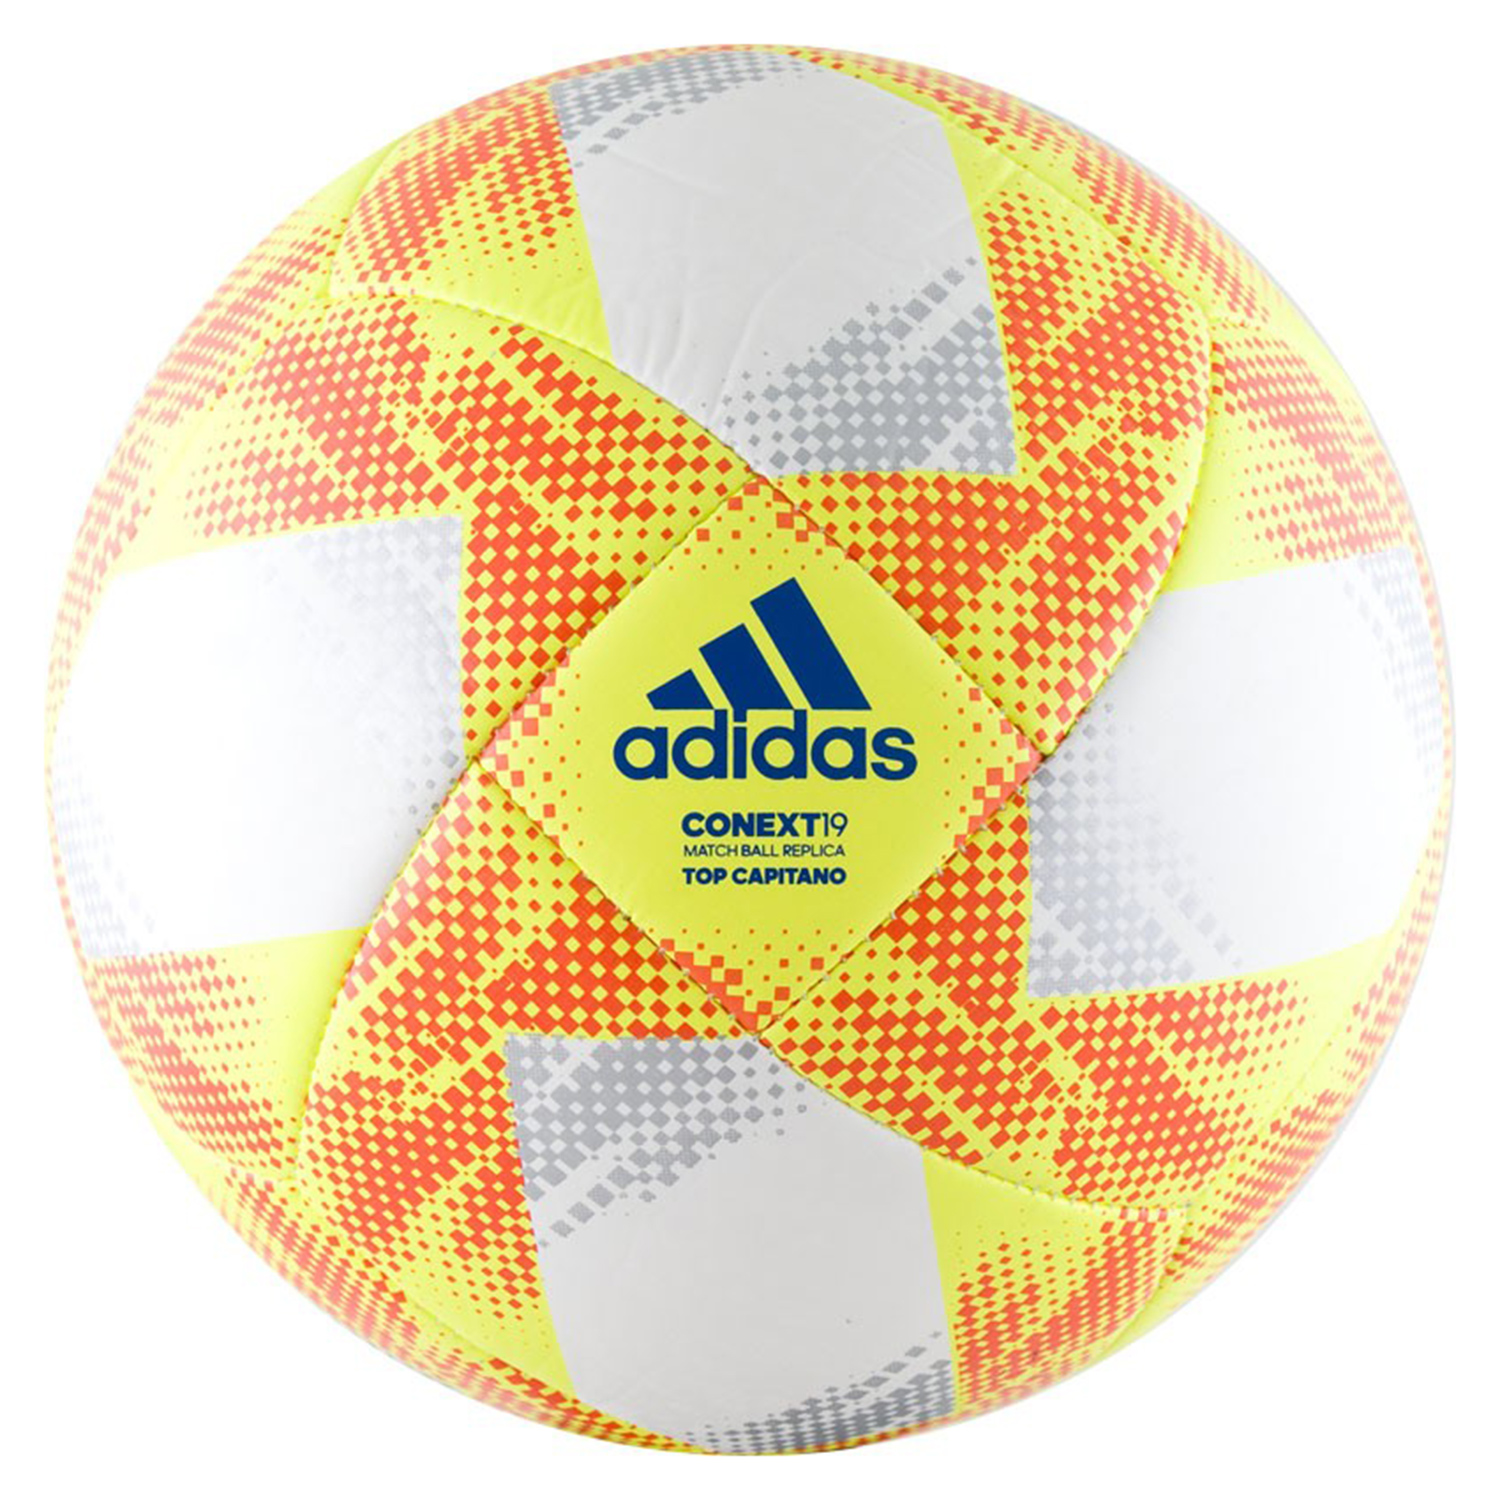 Adidas Conext 19 Top Capitano Футбольные мячи DN8636 купите в интернет  магазине Professionalsport в Москве с доставкой по РФ